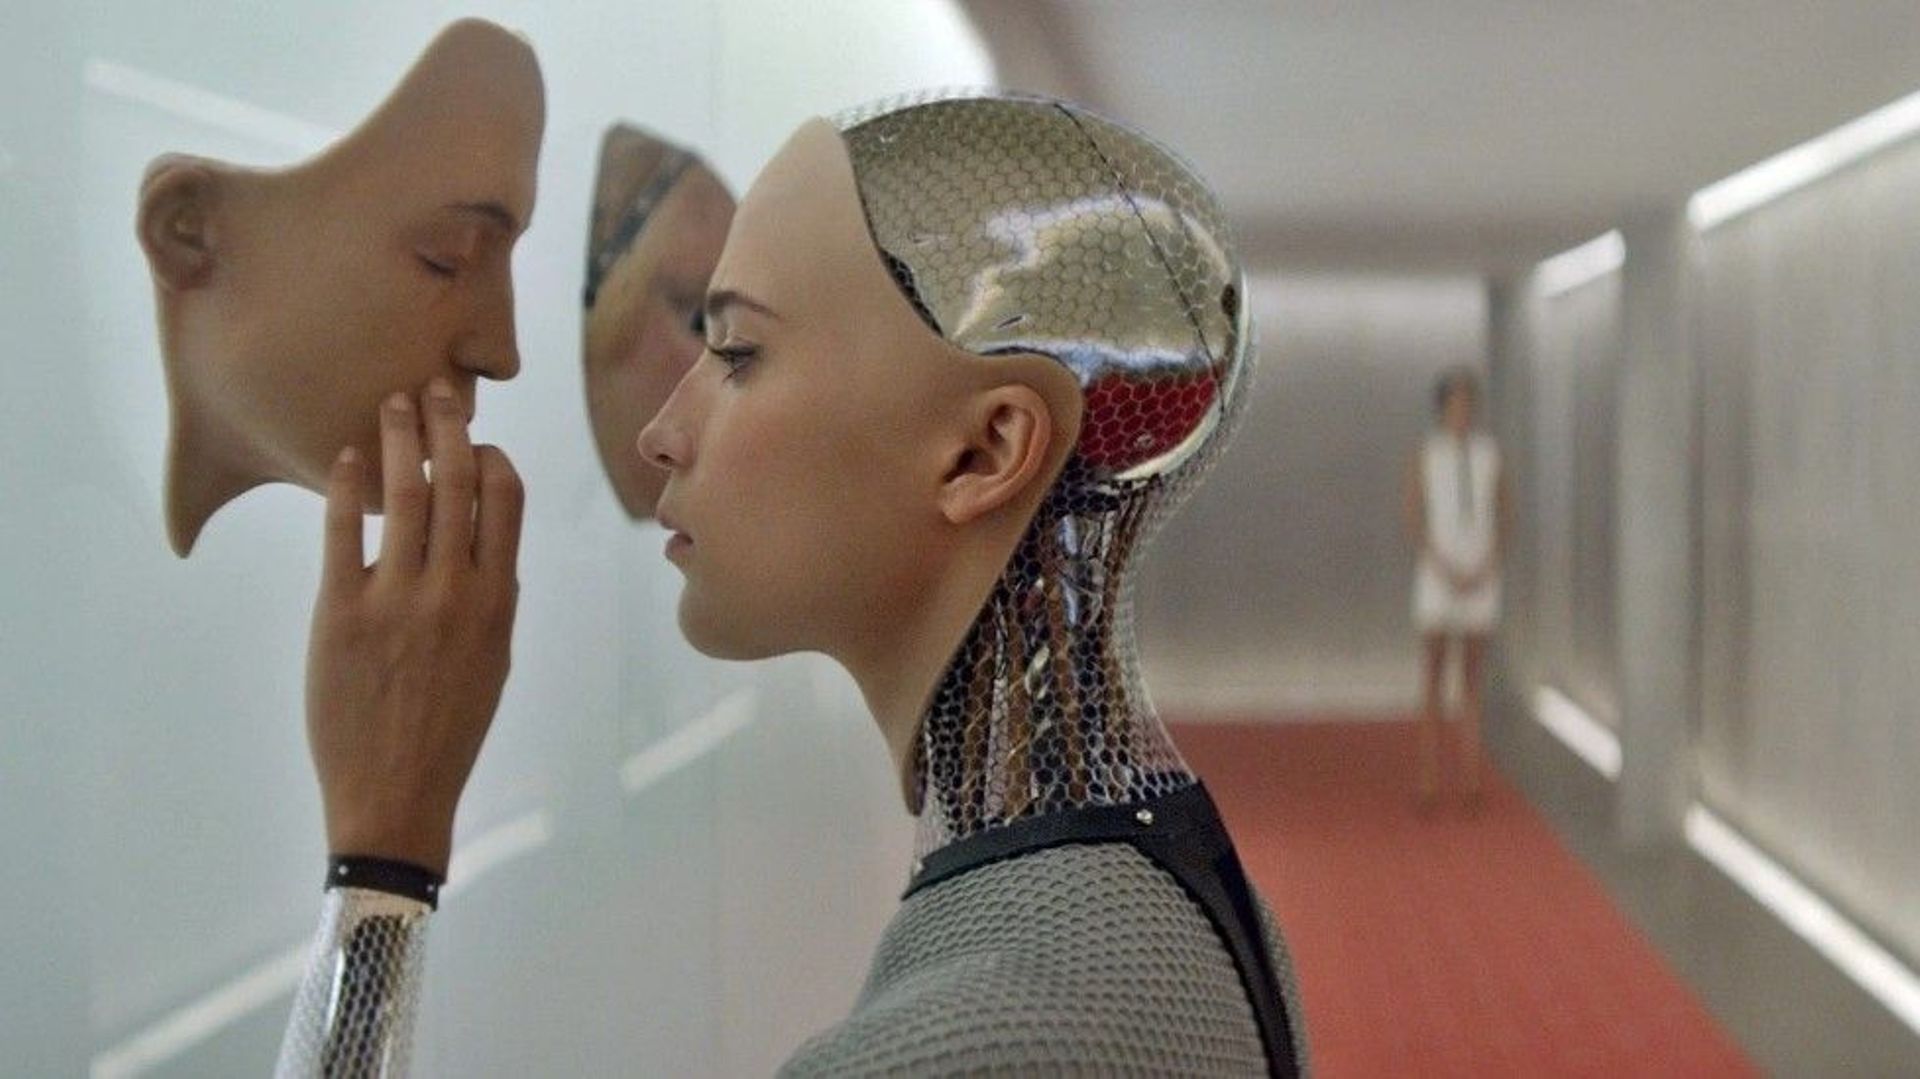 Le manque de femmes dans les films sur l’IA, comme "Ex machina", renforce l’idée selon laquelle ce champ de recherche est réservé aux "geeks".